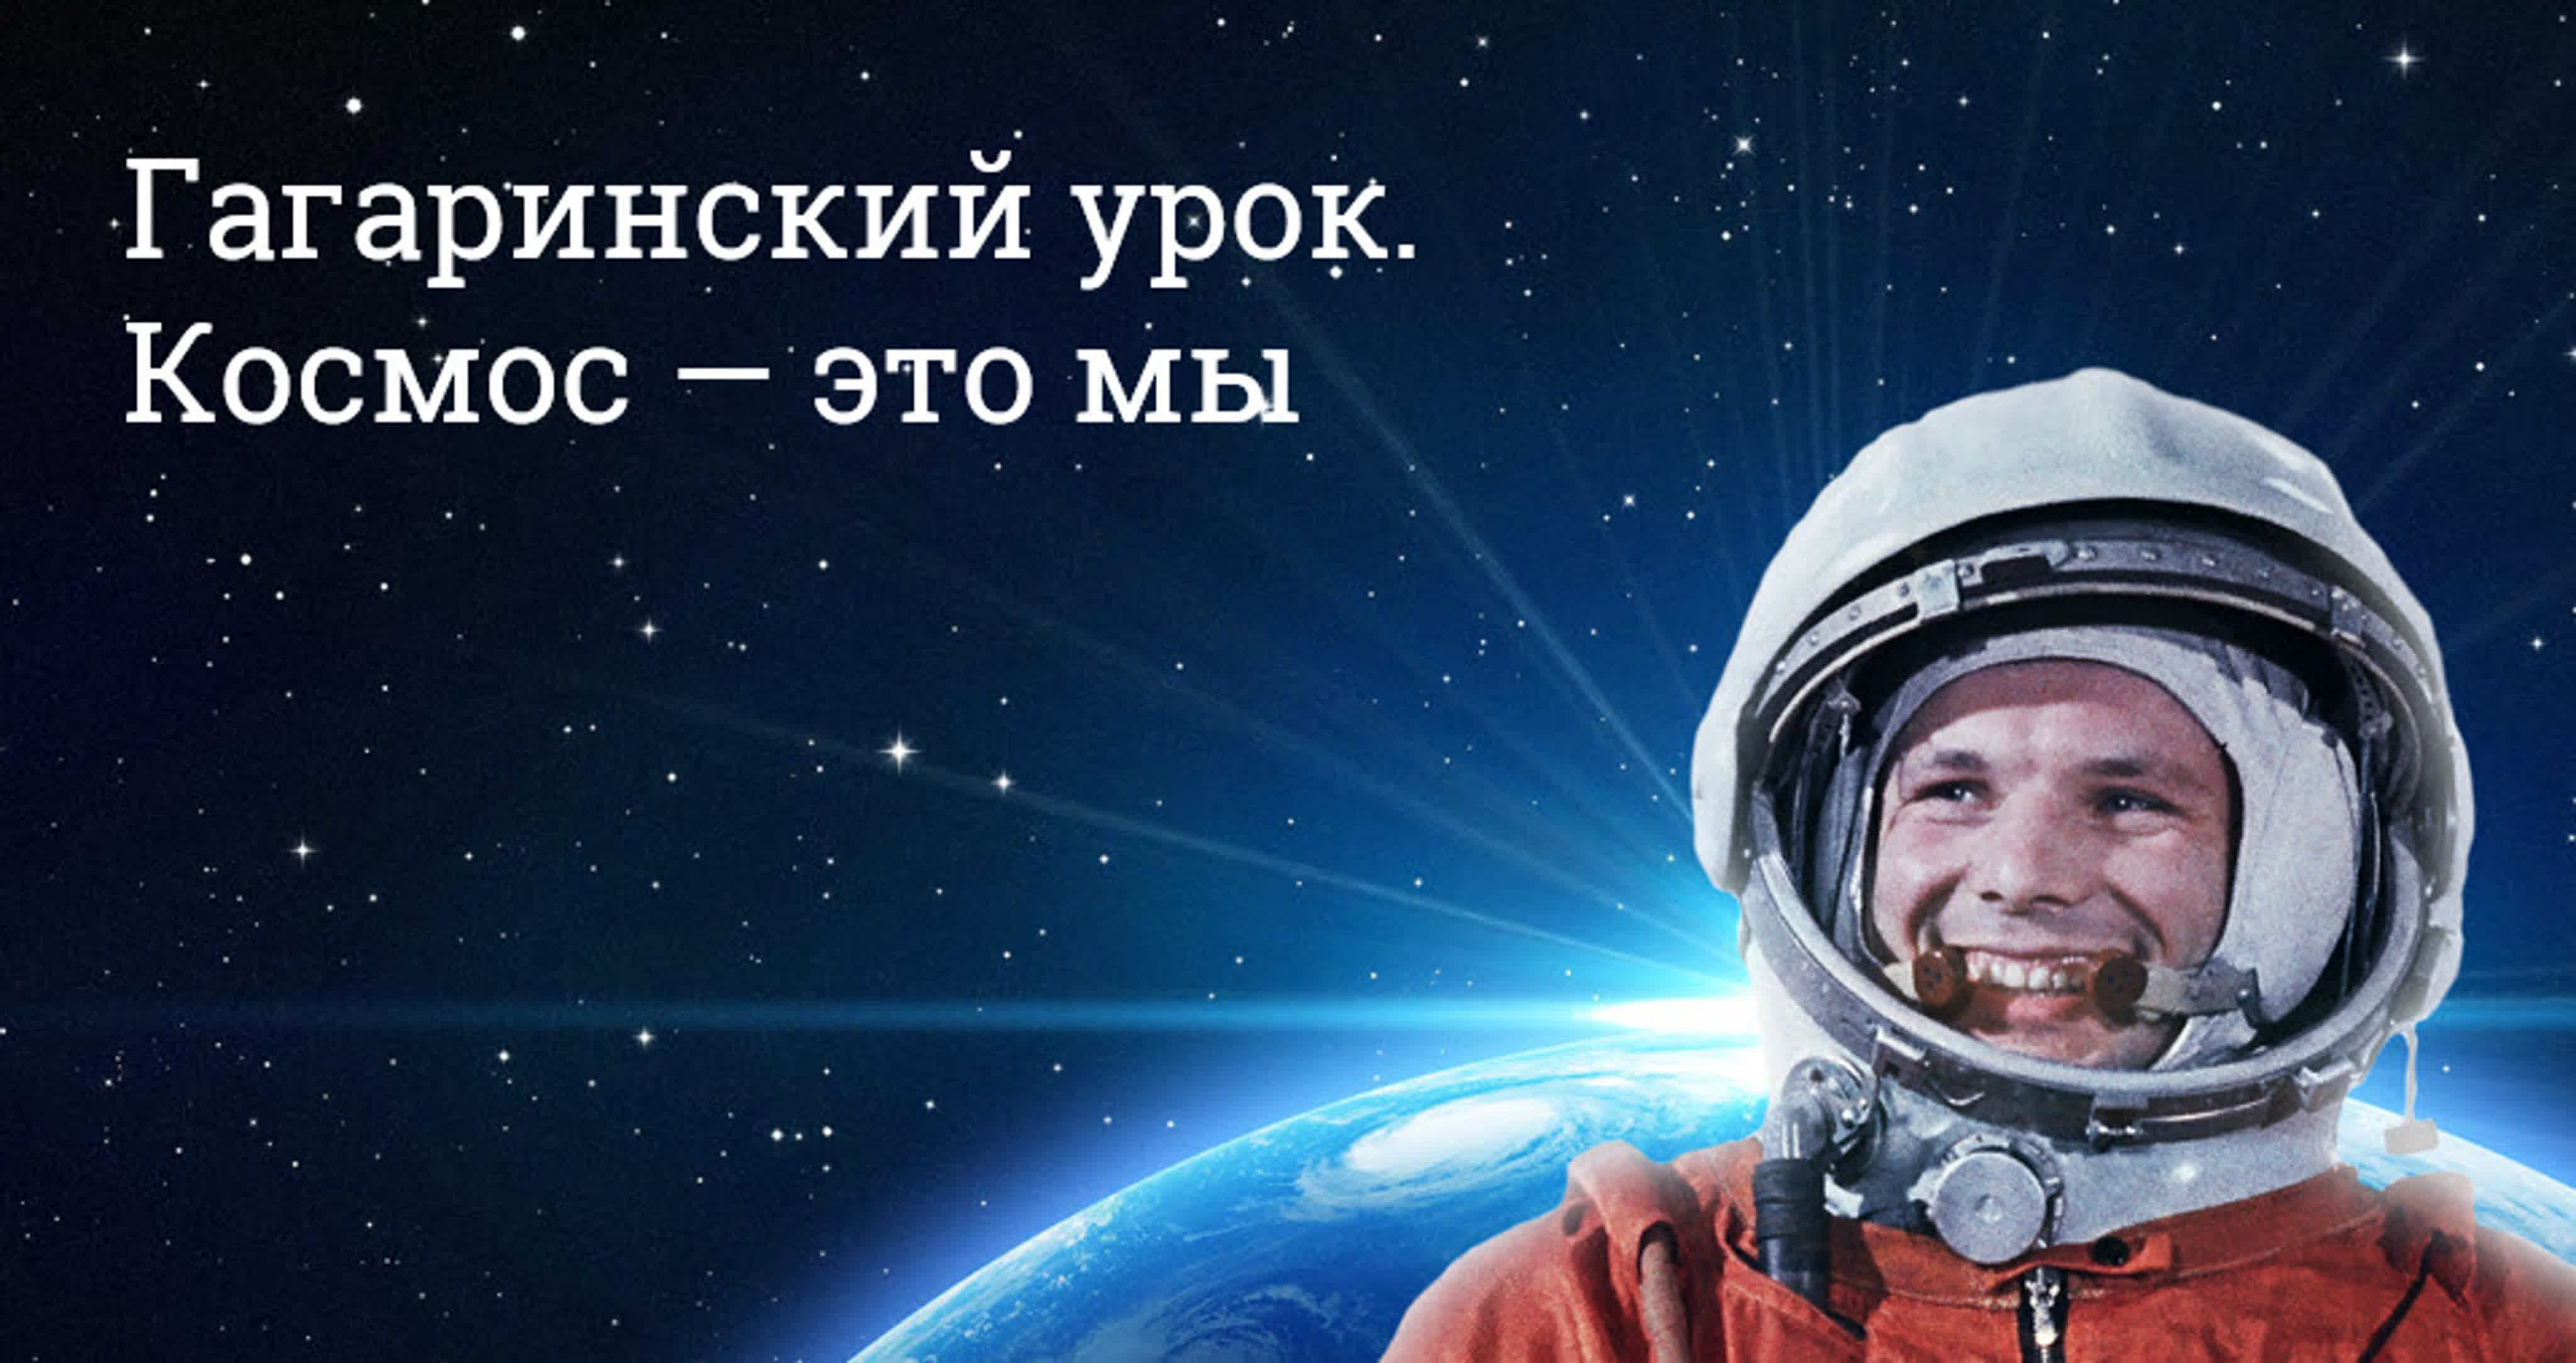 Сценарий на 12 апреля день космонавтики. Гагаринский урок космос это мы. День космонавтики. День Космонавта. День космонавтики Гагарин.